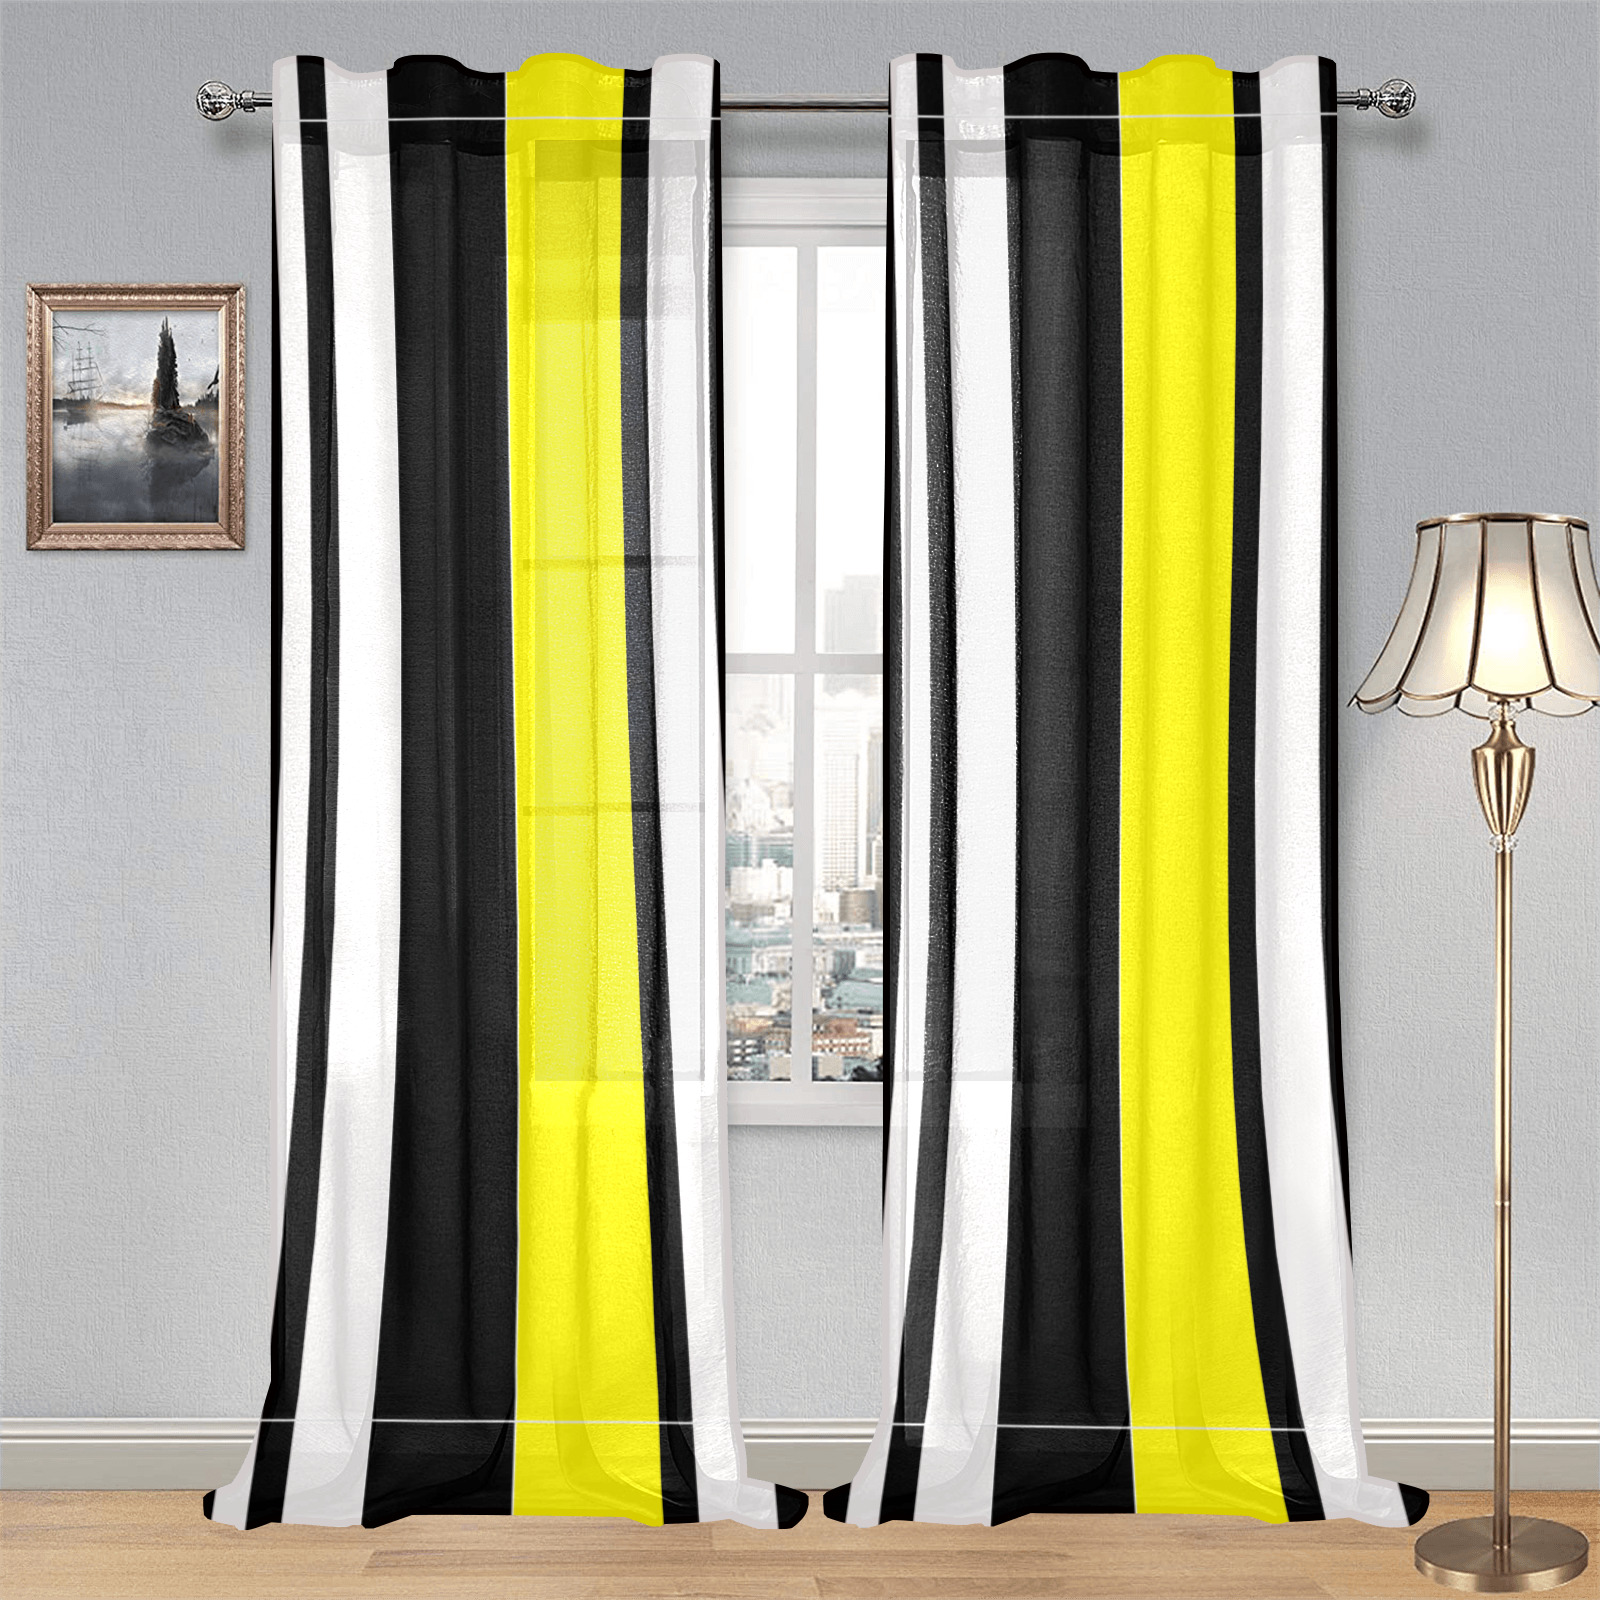 by stripes Gauze Curtain 28"x95" (Two-Piece)